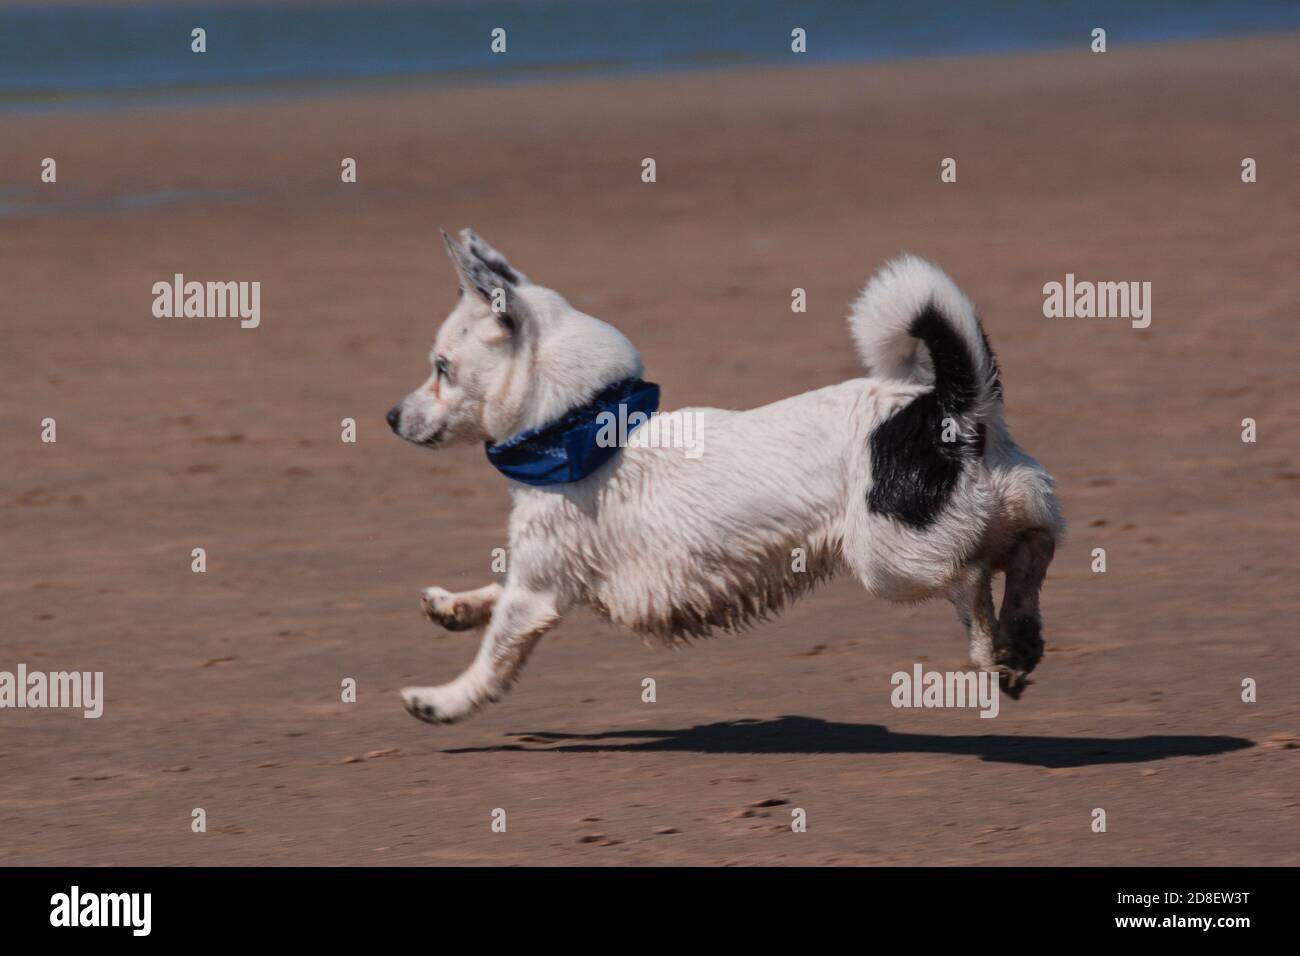 un pequeño perro blanco y negro en una bufanda corre a lo largo de la playa de arena sin tocar el suelo con su como si el cachorro estuviera volando Foto de stock